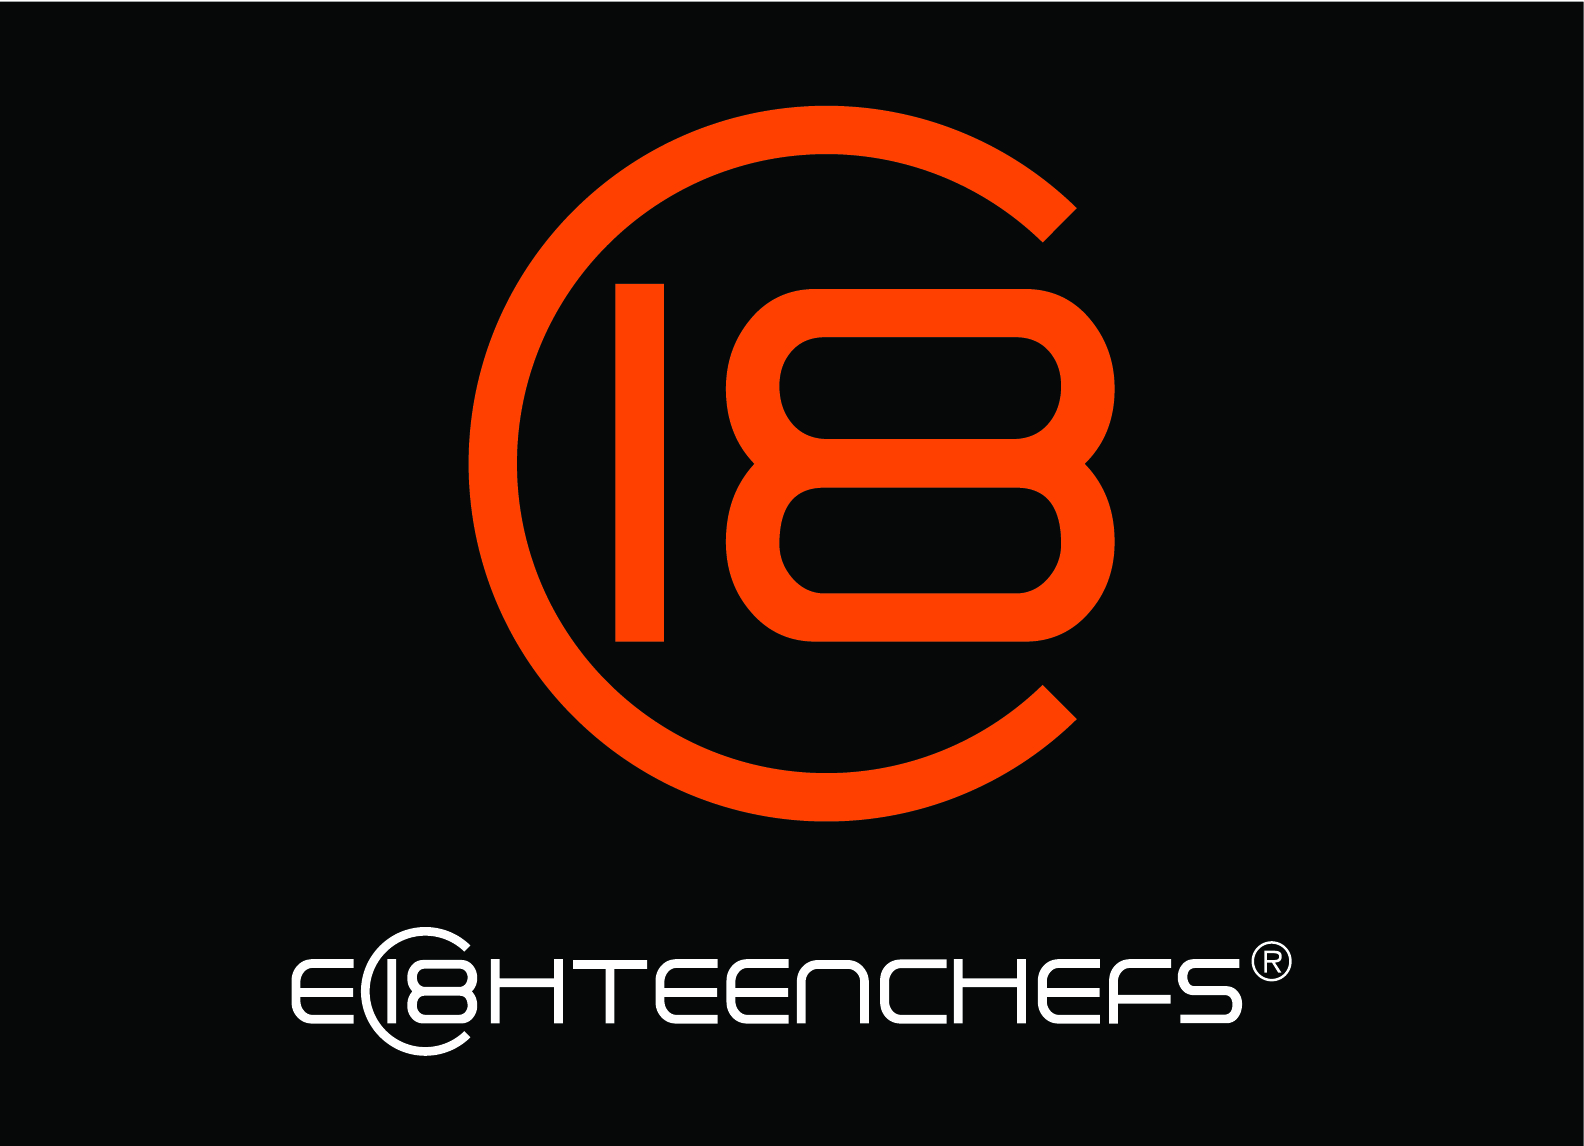 Eighteen Chefs